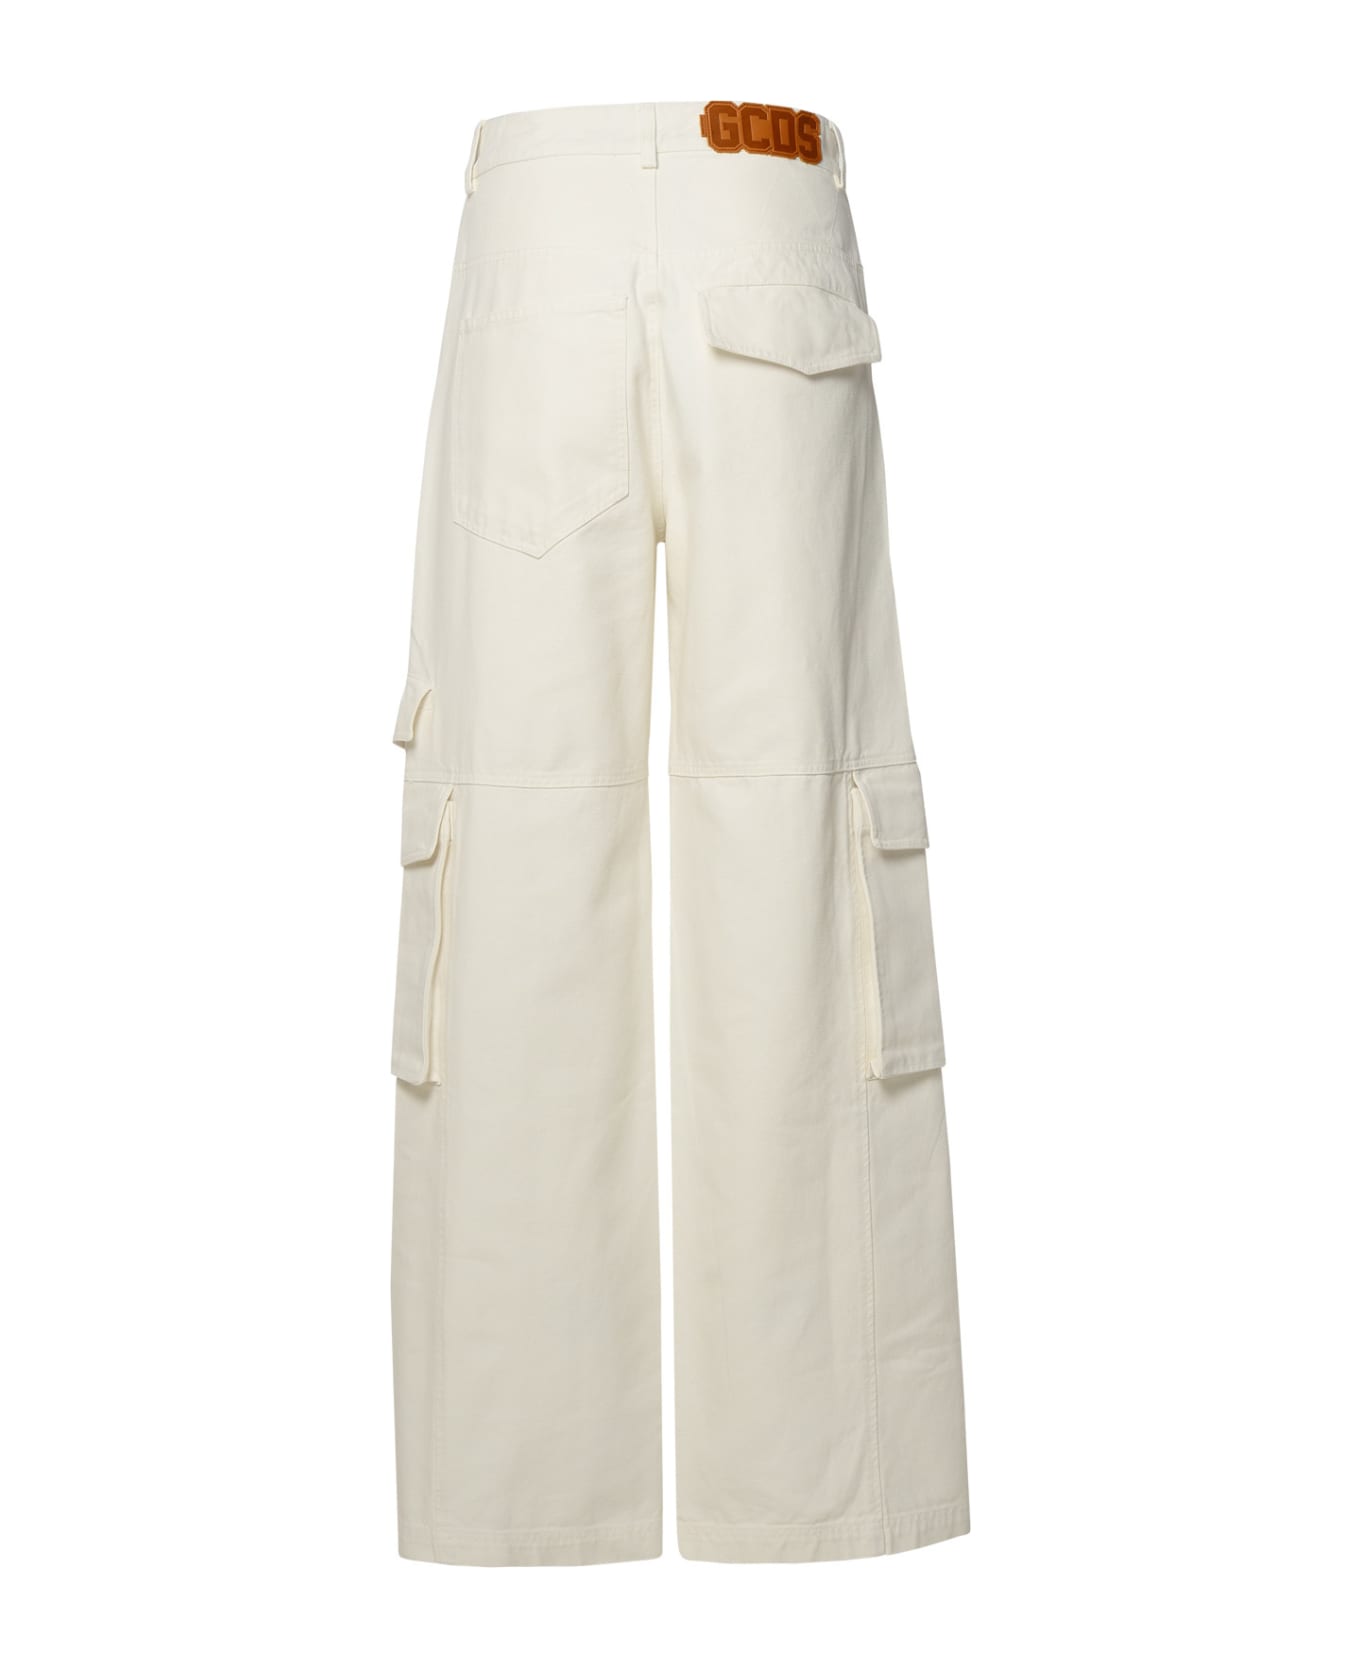 GCDS White Cotton Jeans - Bianco sporco